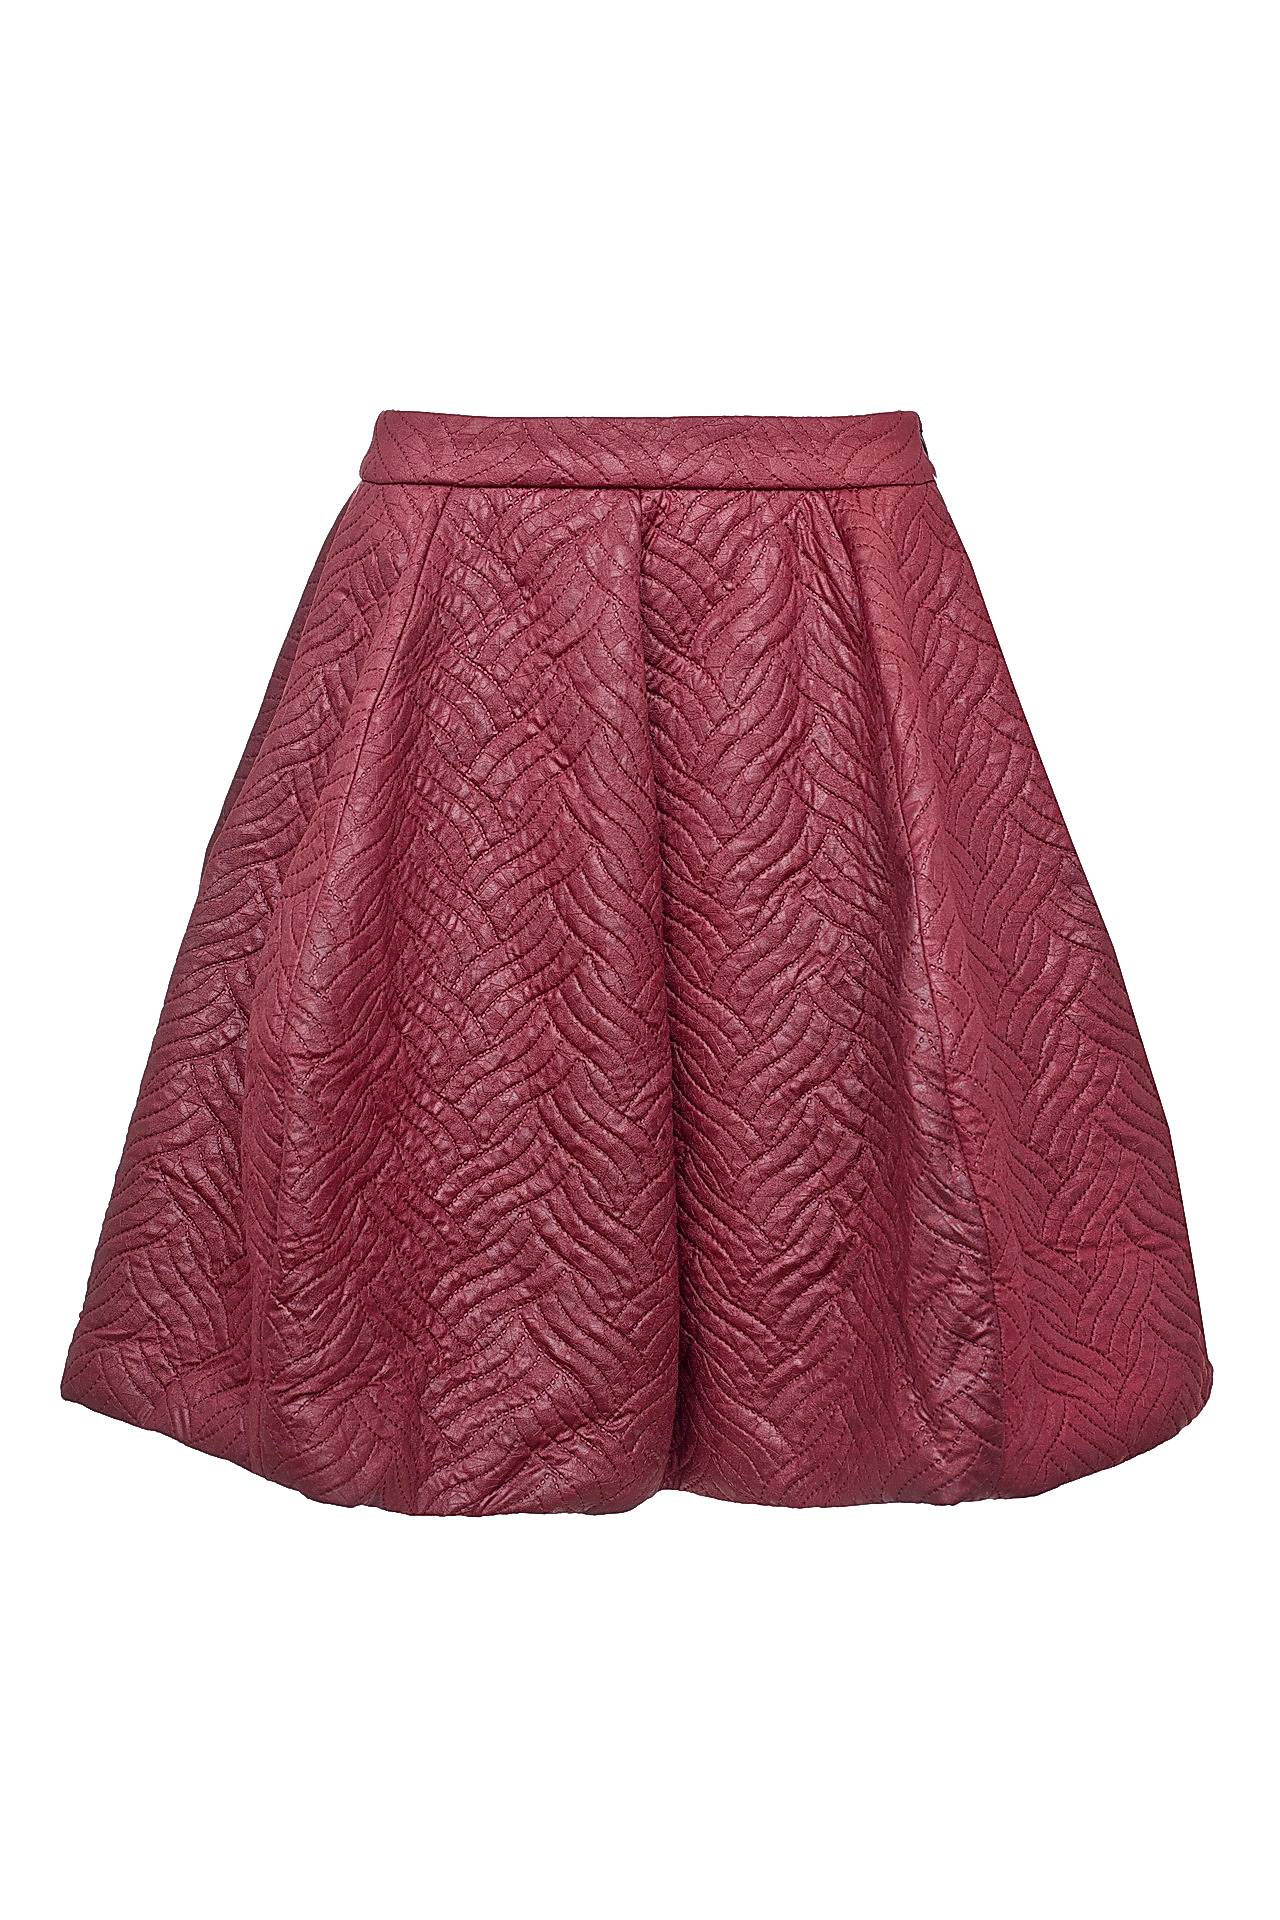 Одежда женская Юбка LETICIA MILANO (J052219/15.1). Купить за 7450 руб.